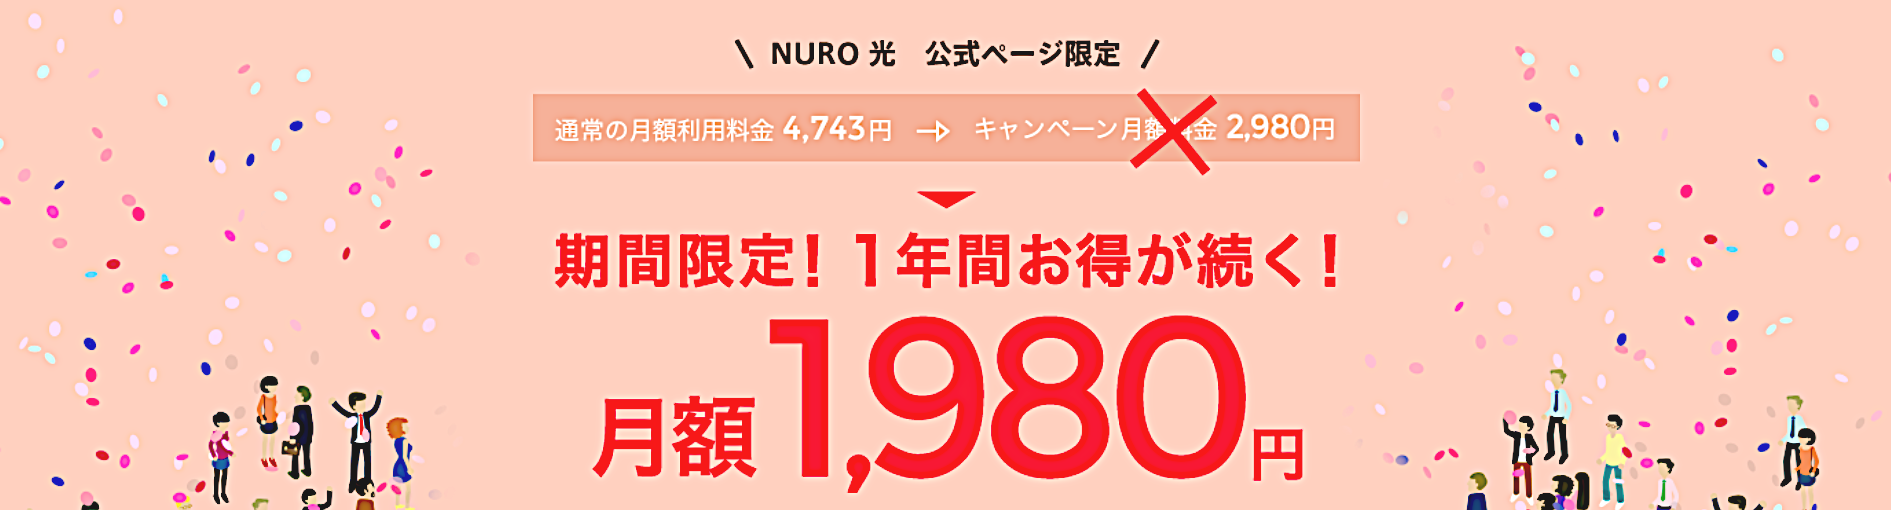 NURO公式特典イメージ